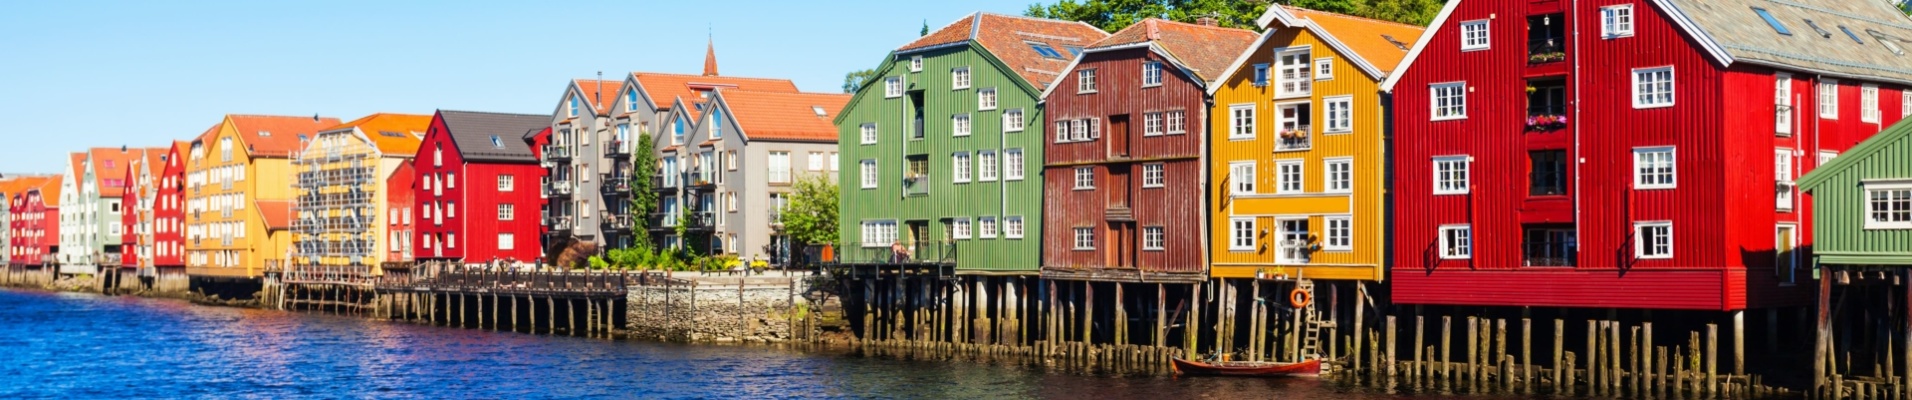 Maisons historiques colorées de Trondheim en Norvège